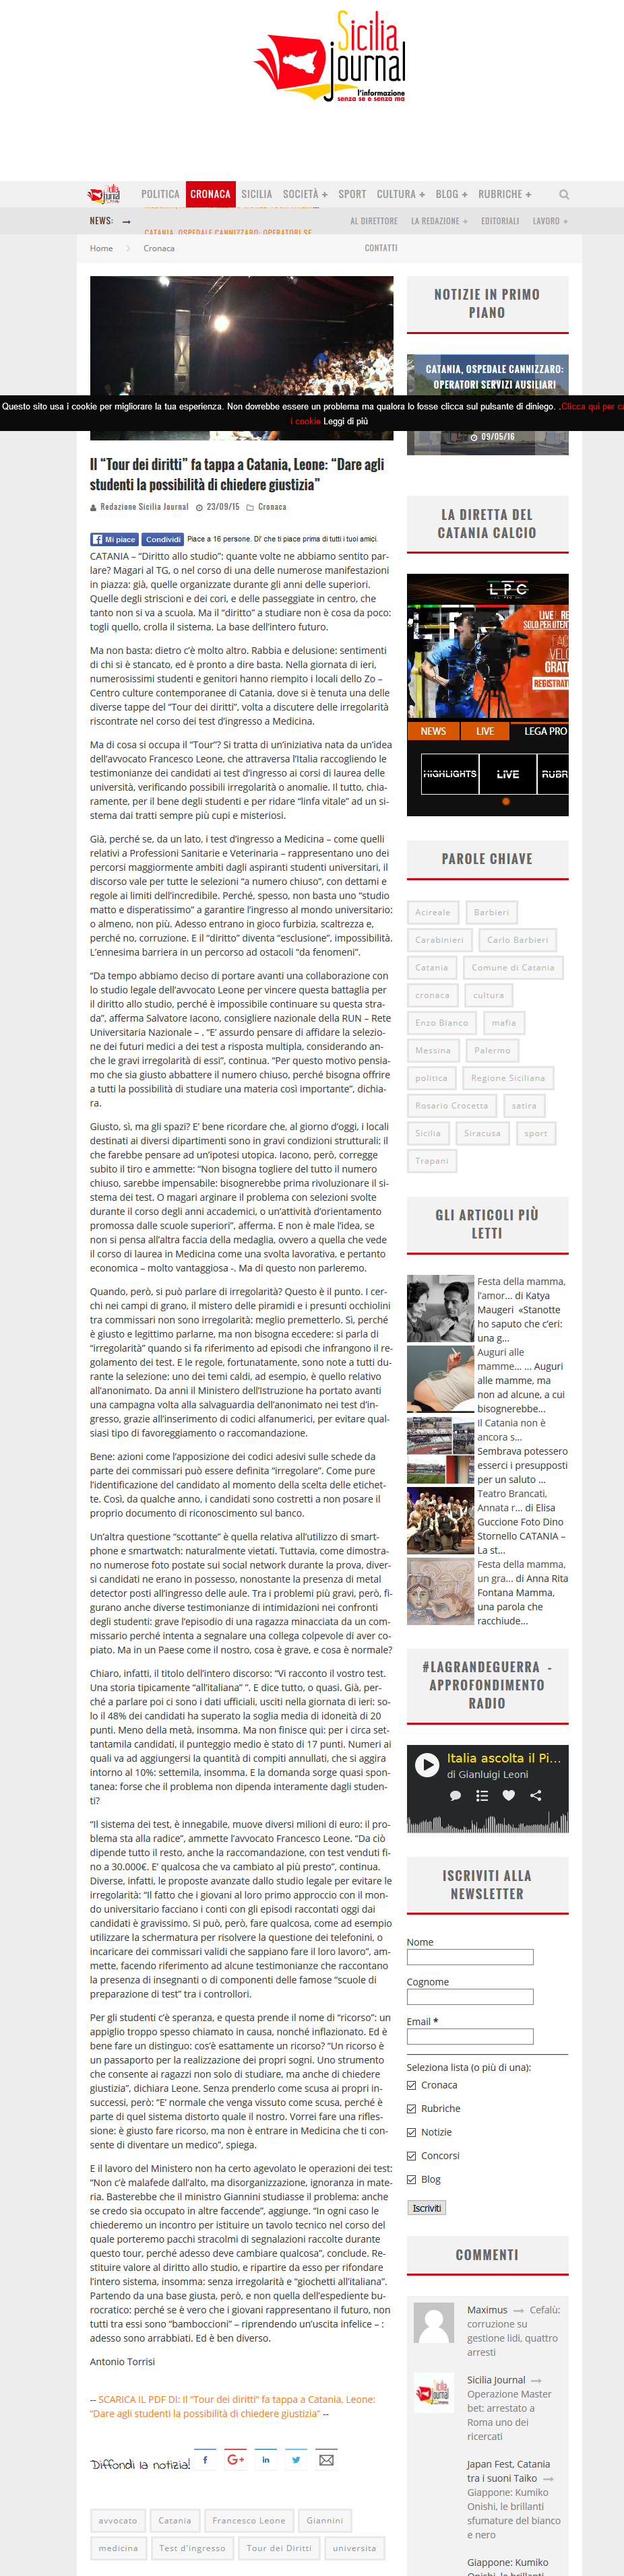 http_www.siciliajournal.it_il-tour-dei-diritti-fa-tappa-a-catania-leone-dare-agli-studenti-la-possibilita-di-chiedere-giustizia_